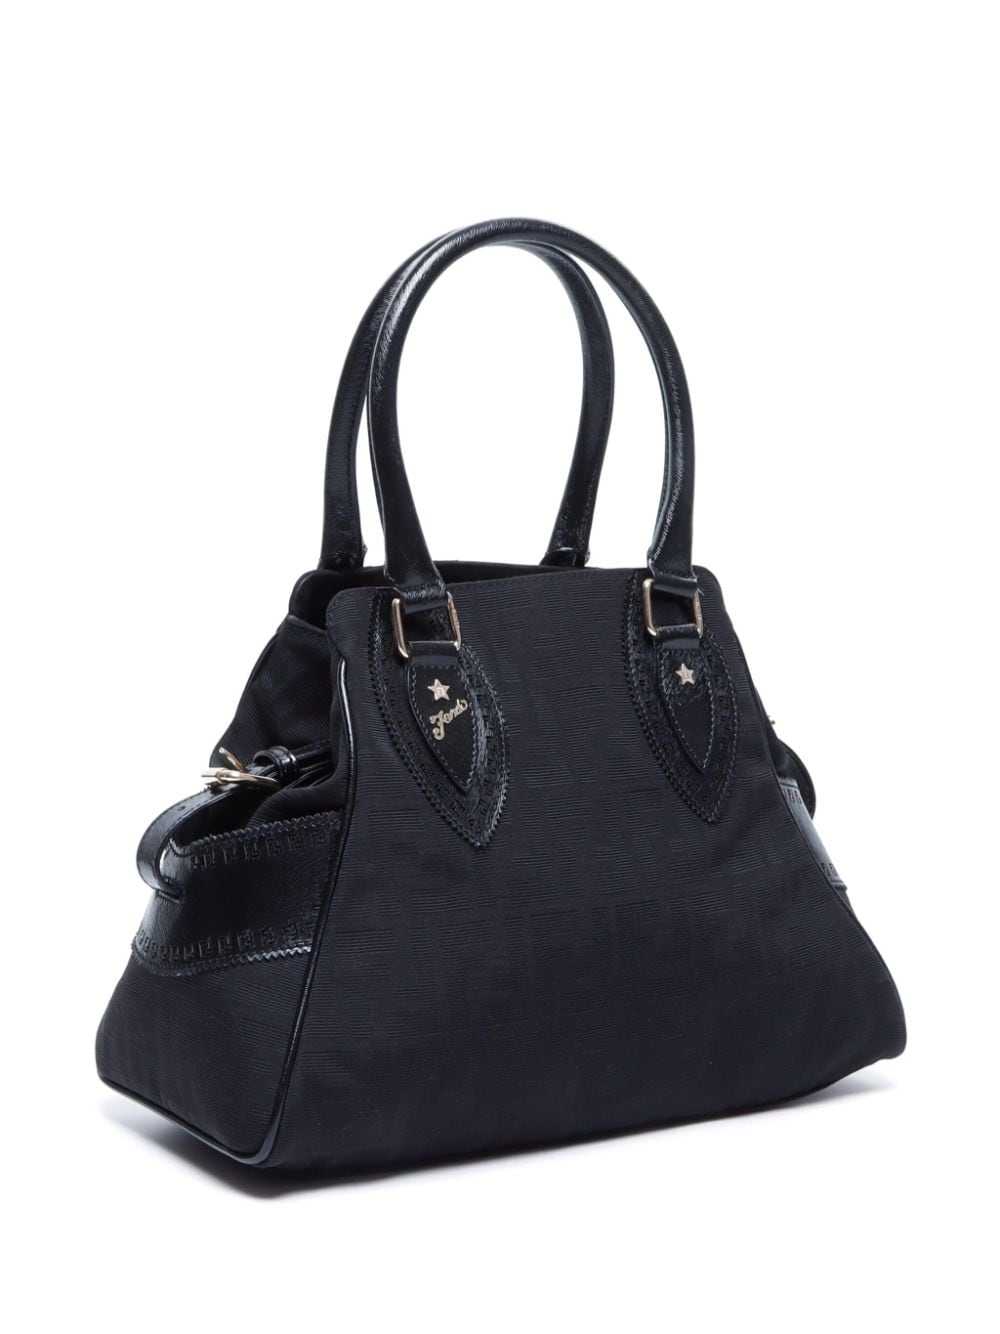 Fendi Pre-Owned Etniko Zucca handbag - Black - image 3